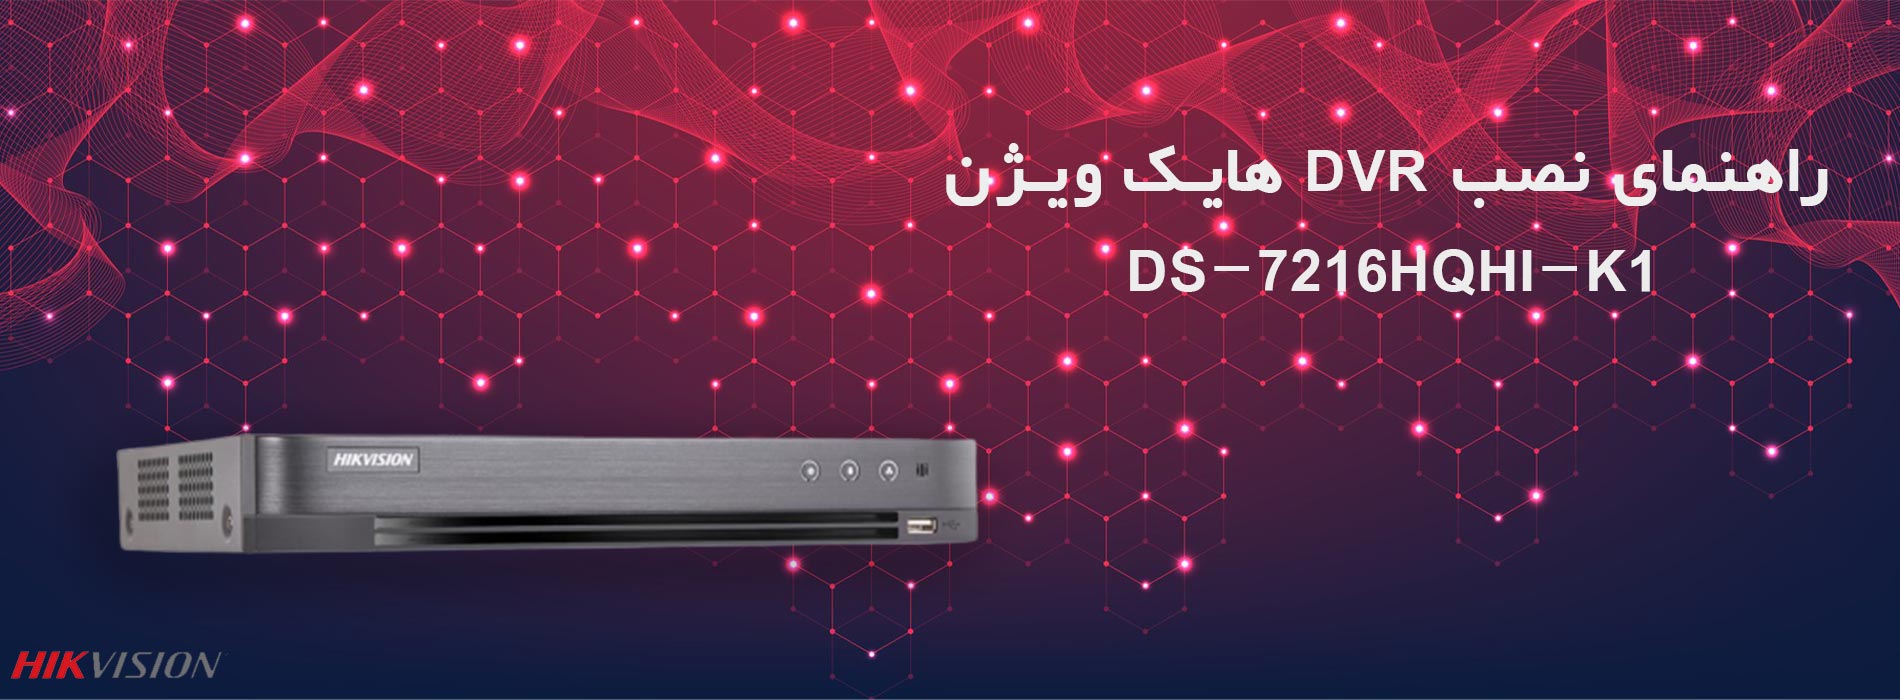 راهنمای نصب دستگاه DVR هایک ویژن DS-7216HQHI-K1